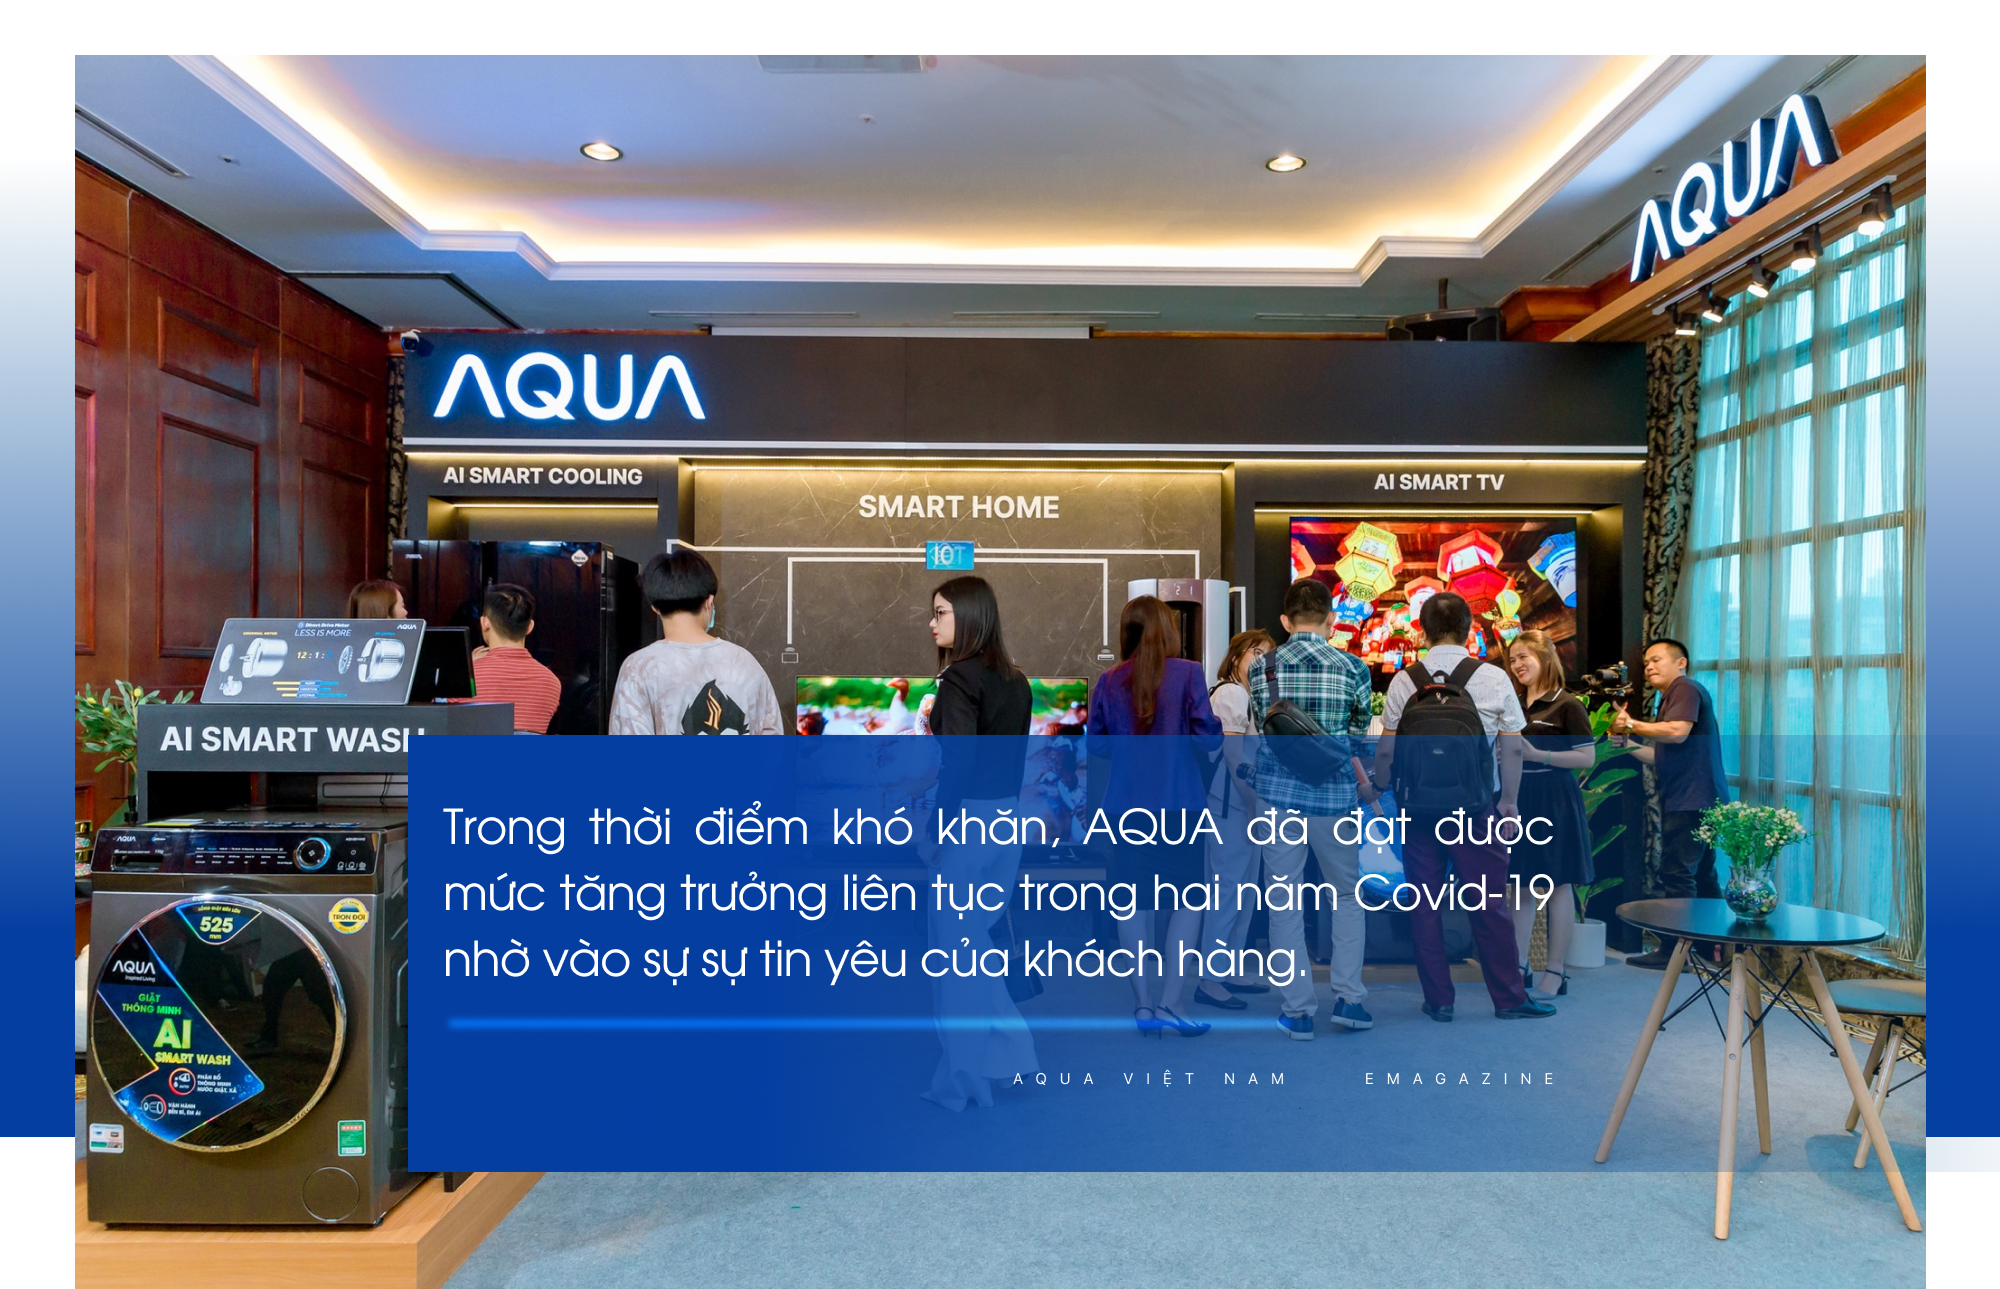 AQUA Việt Nam - Hành trình 26 năm cải tiến công nghệ khơi nguồn cảm hứng sống - Ảnh 13.